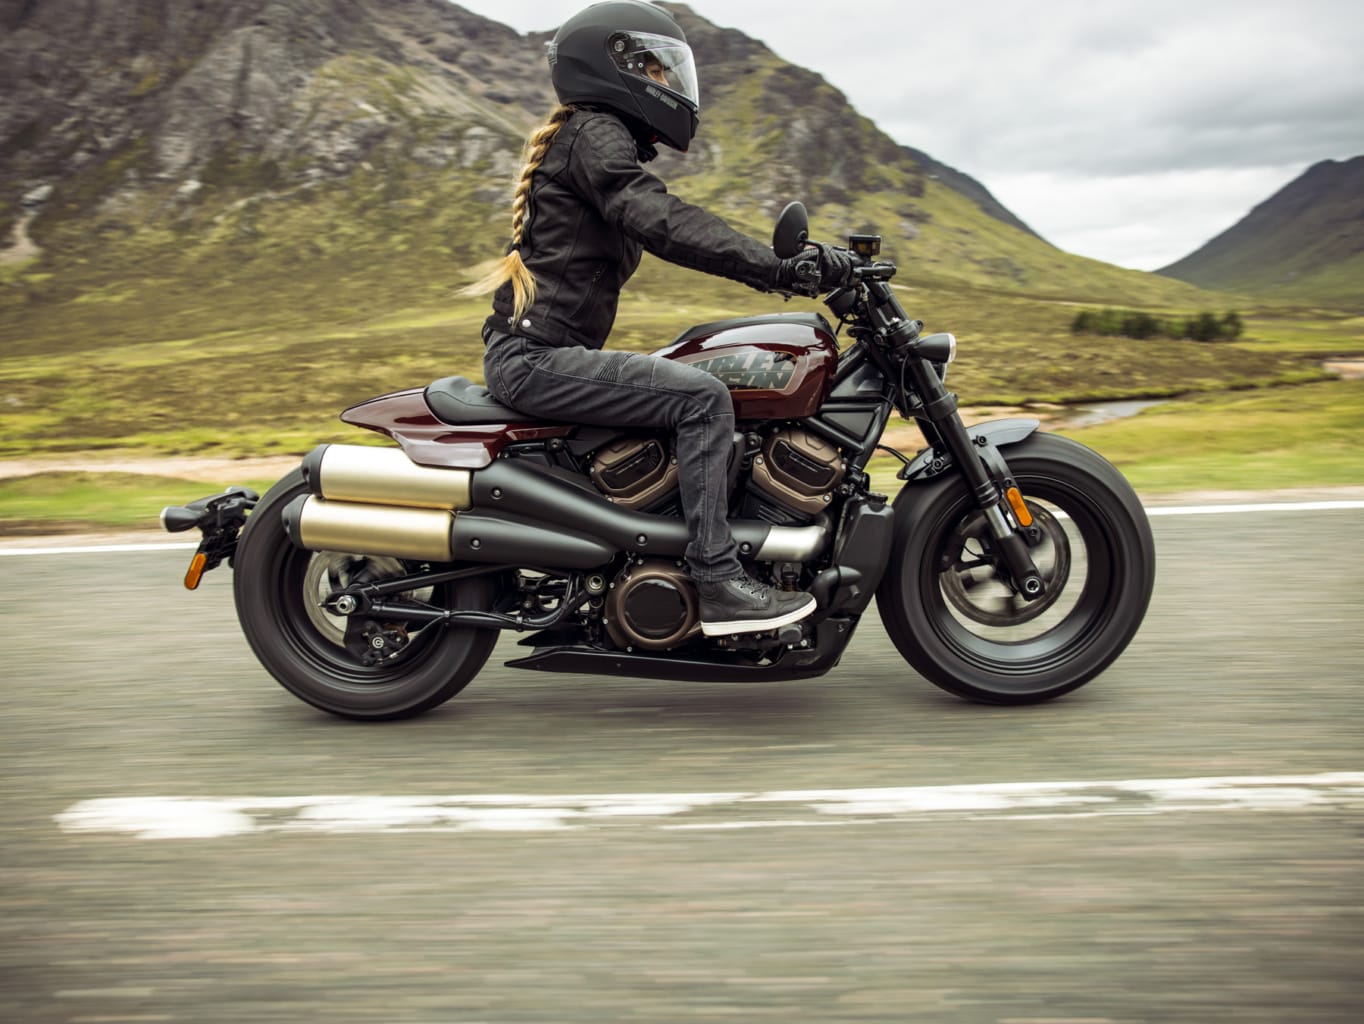 Siêu phẩm Harley-Davidson Sportster S 2021 chính thức ra mắt với ngoại hình tuyệt đẹp